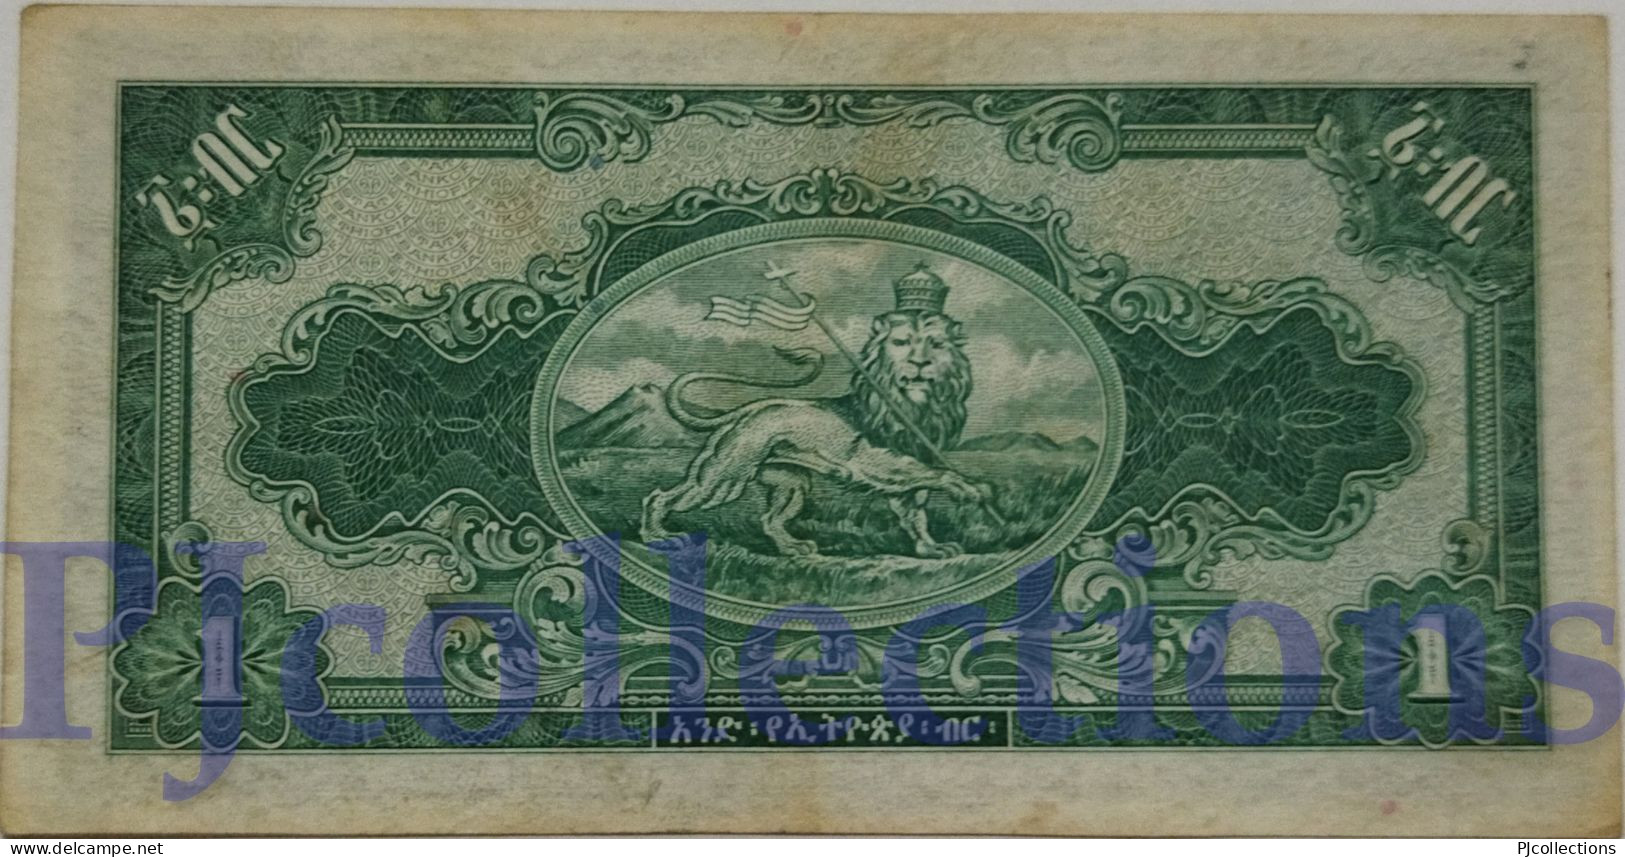 ETHIOPIA 1 DOLLAR 1945 PICK 12b AU+ W/LIGHT STAINS - Ethiopia